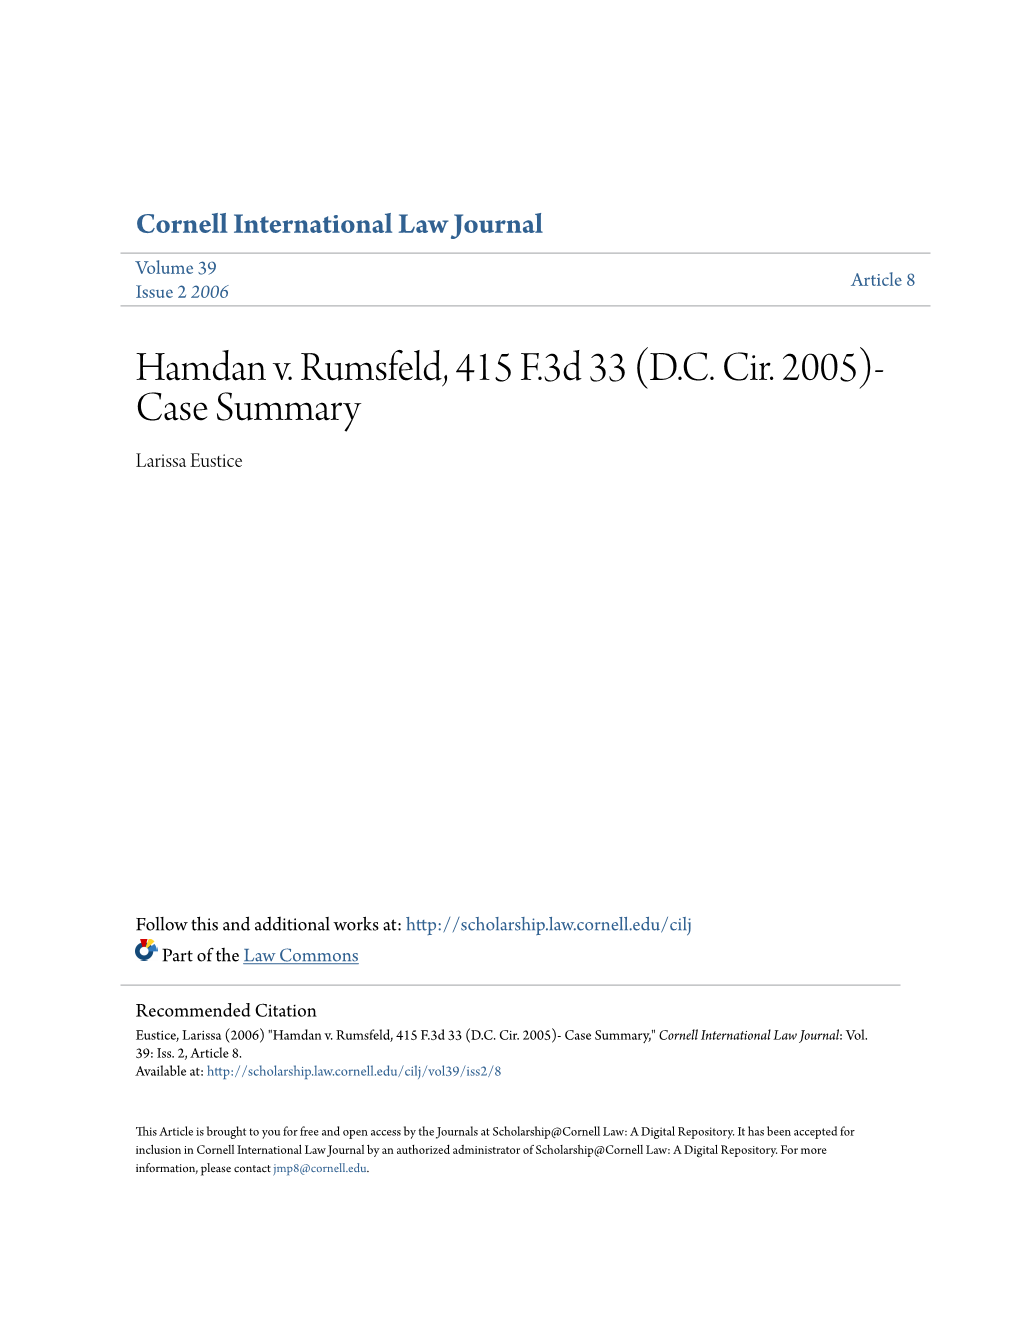 Hamdan V. Rumsfeld, 415 F.3D 33 (D.C